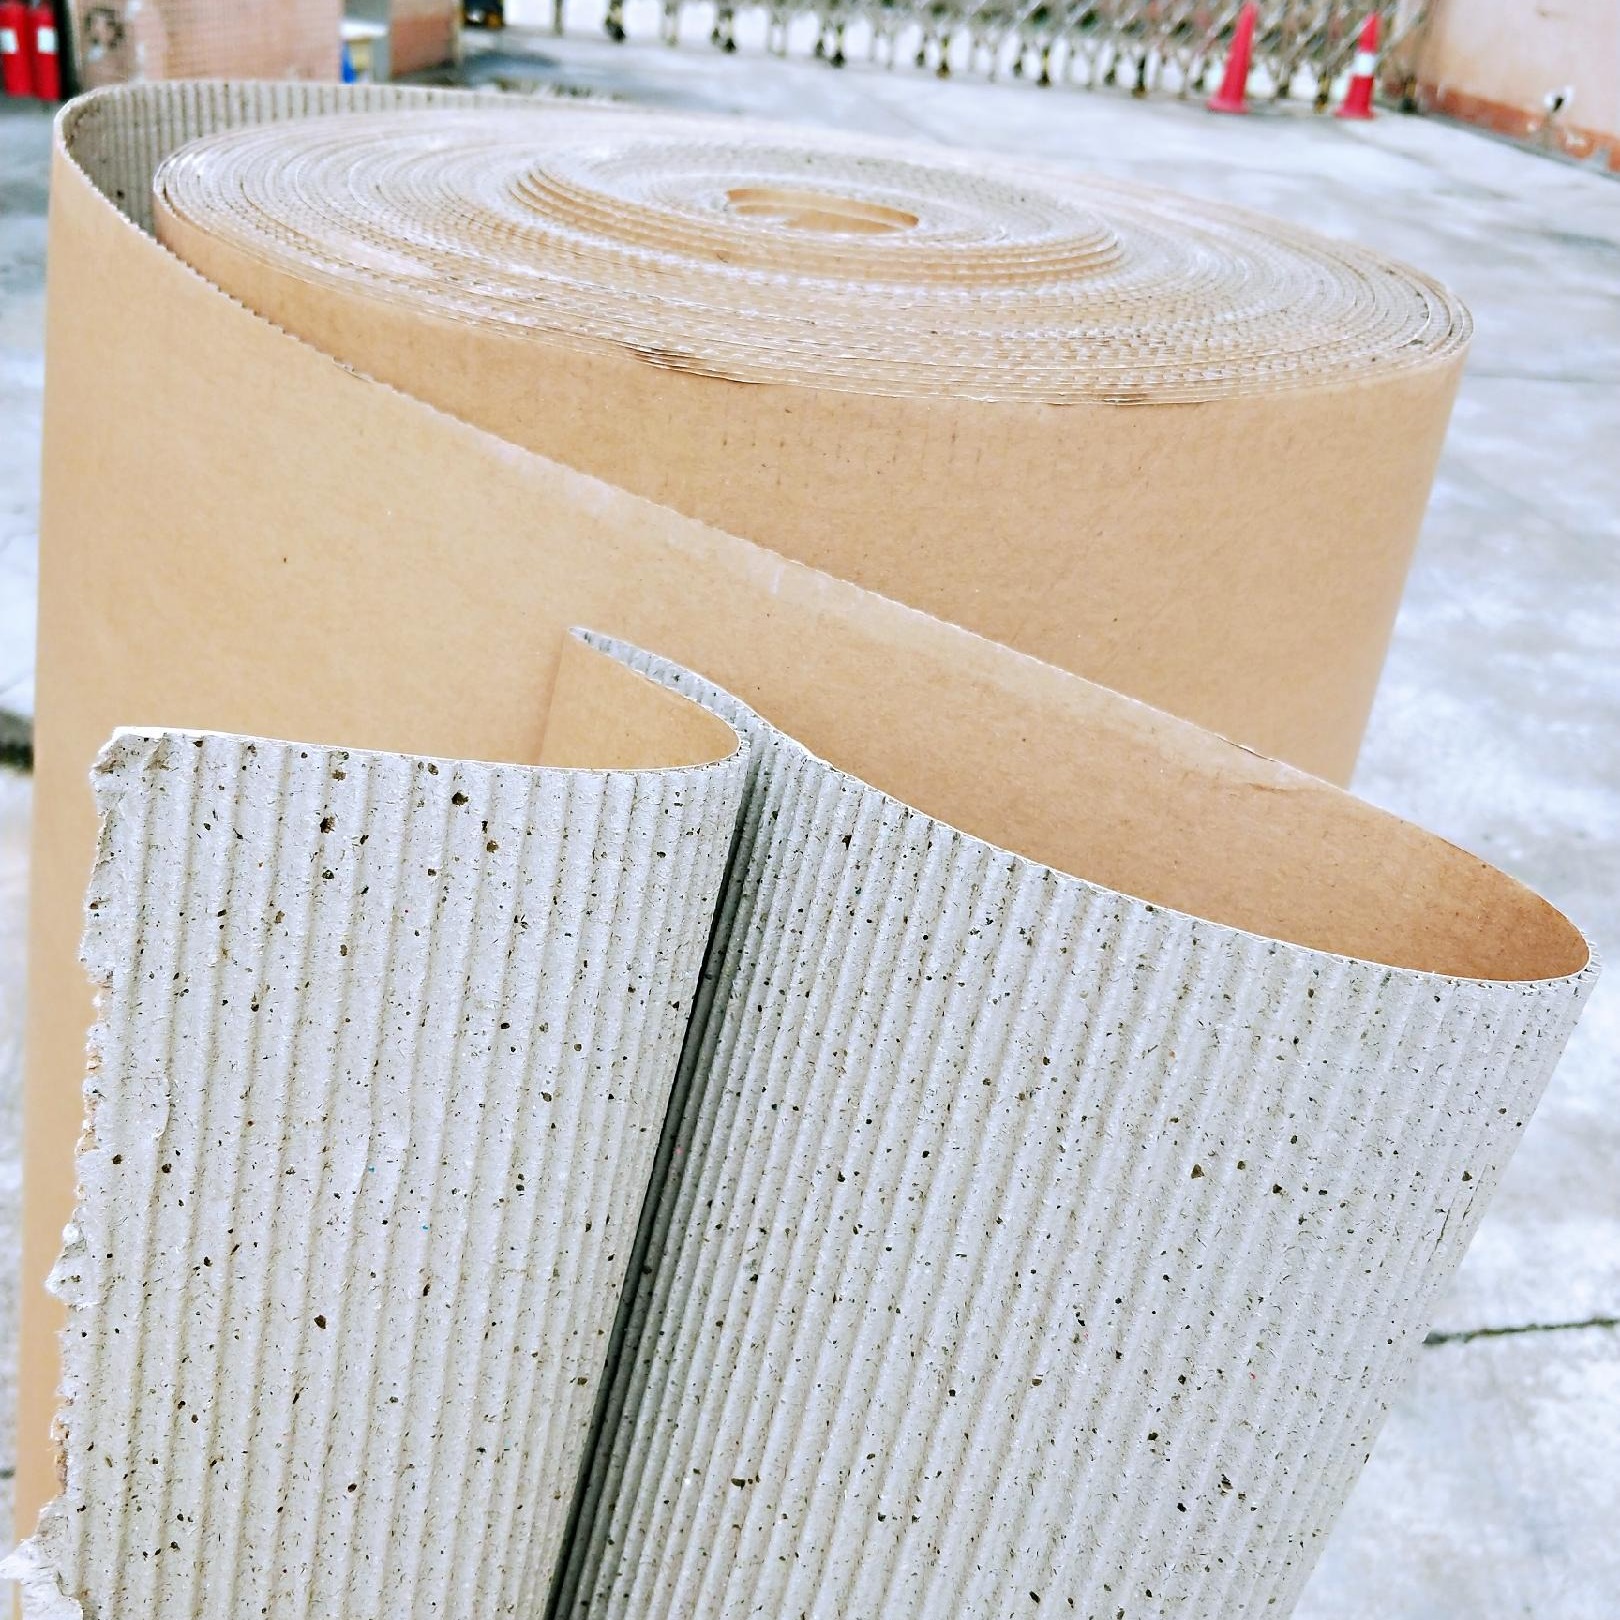 双层瓦楞纸 见坑纸1.250米 家具包装纸 印字纸皮 地板保护纸 家具包装纸